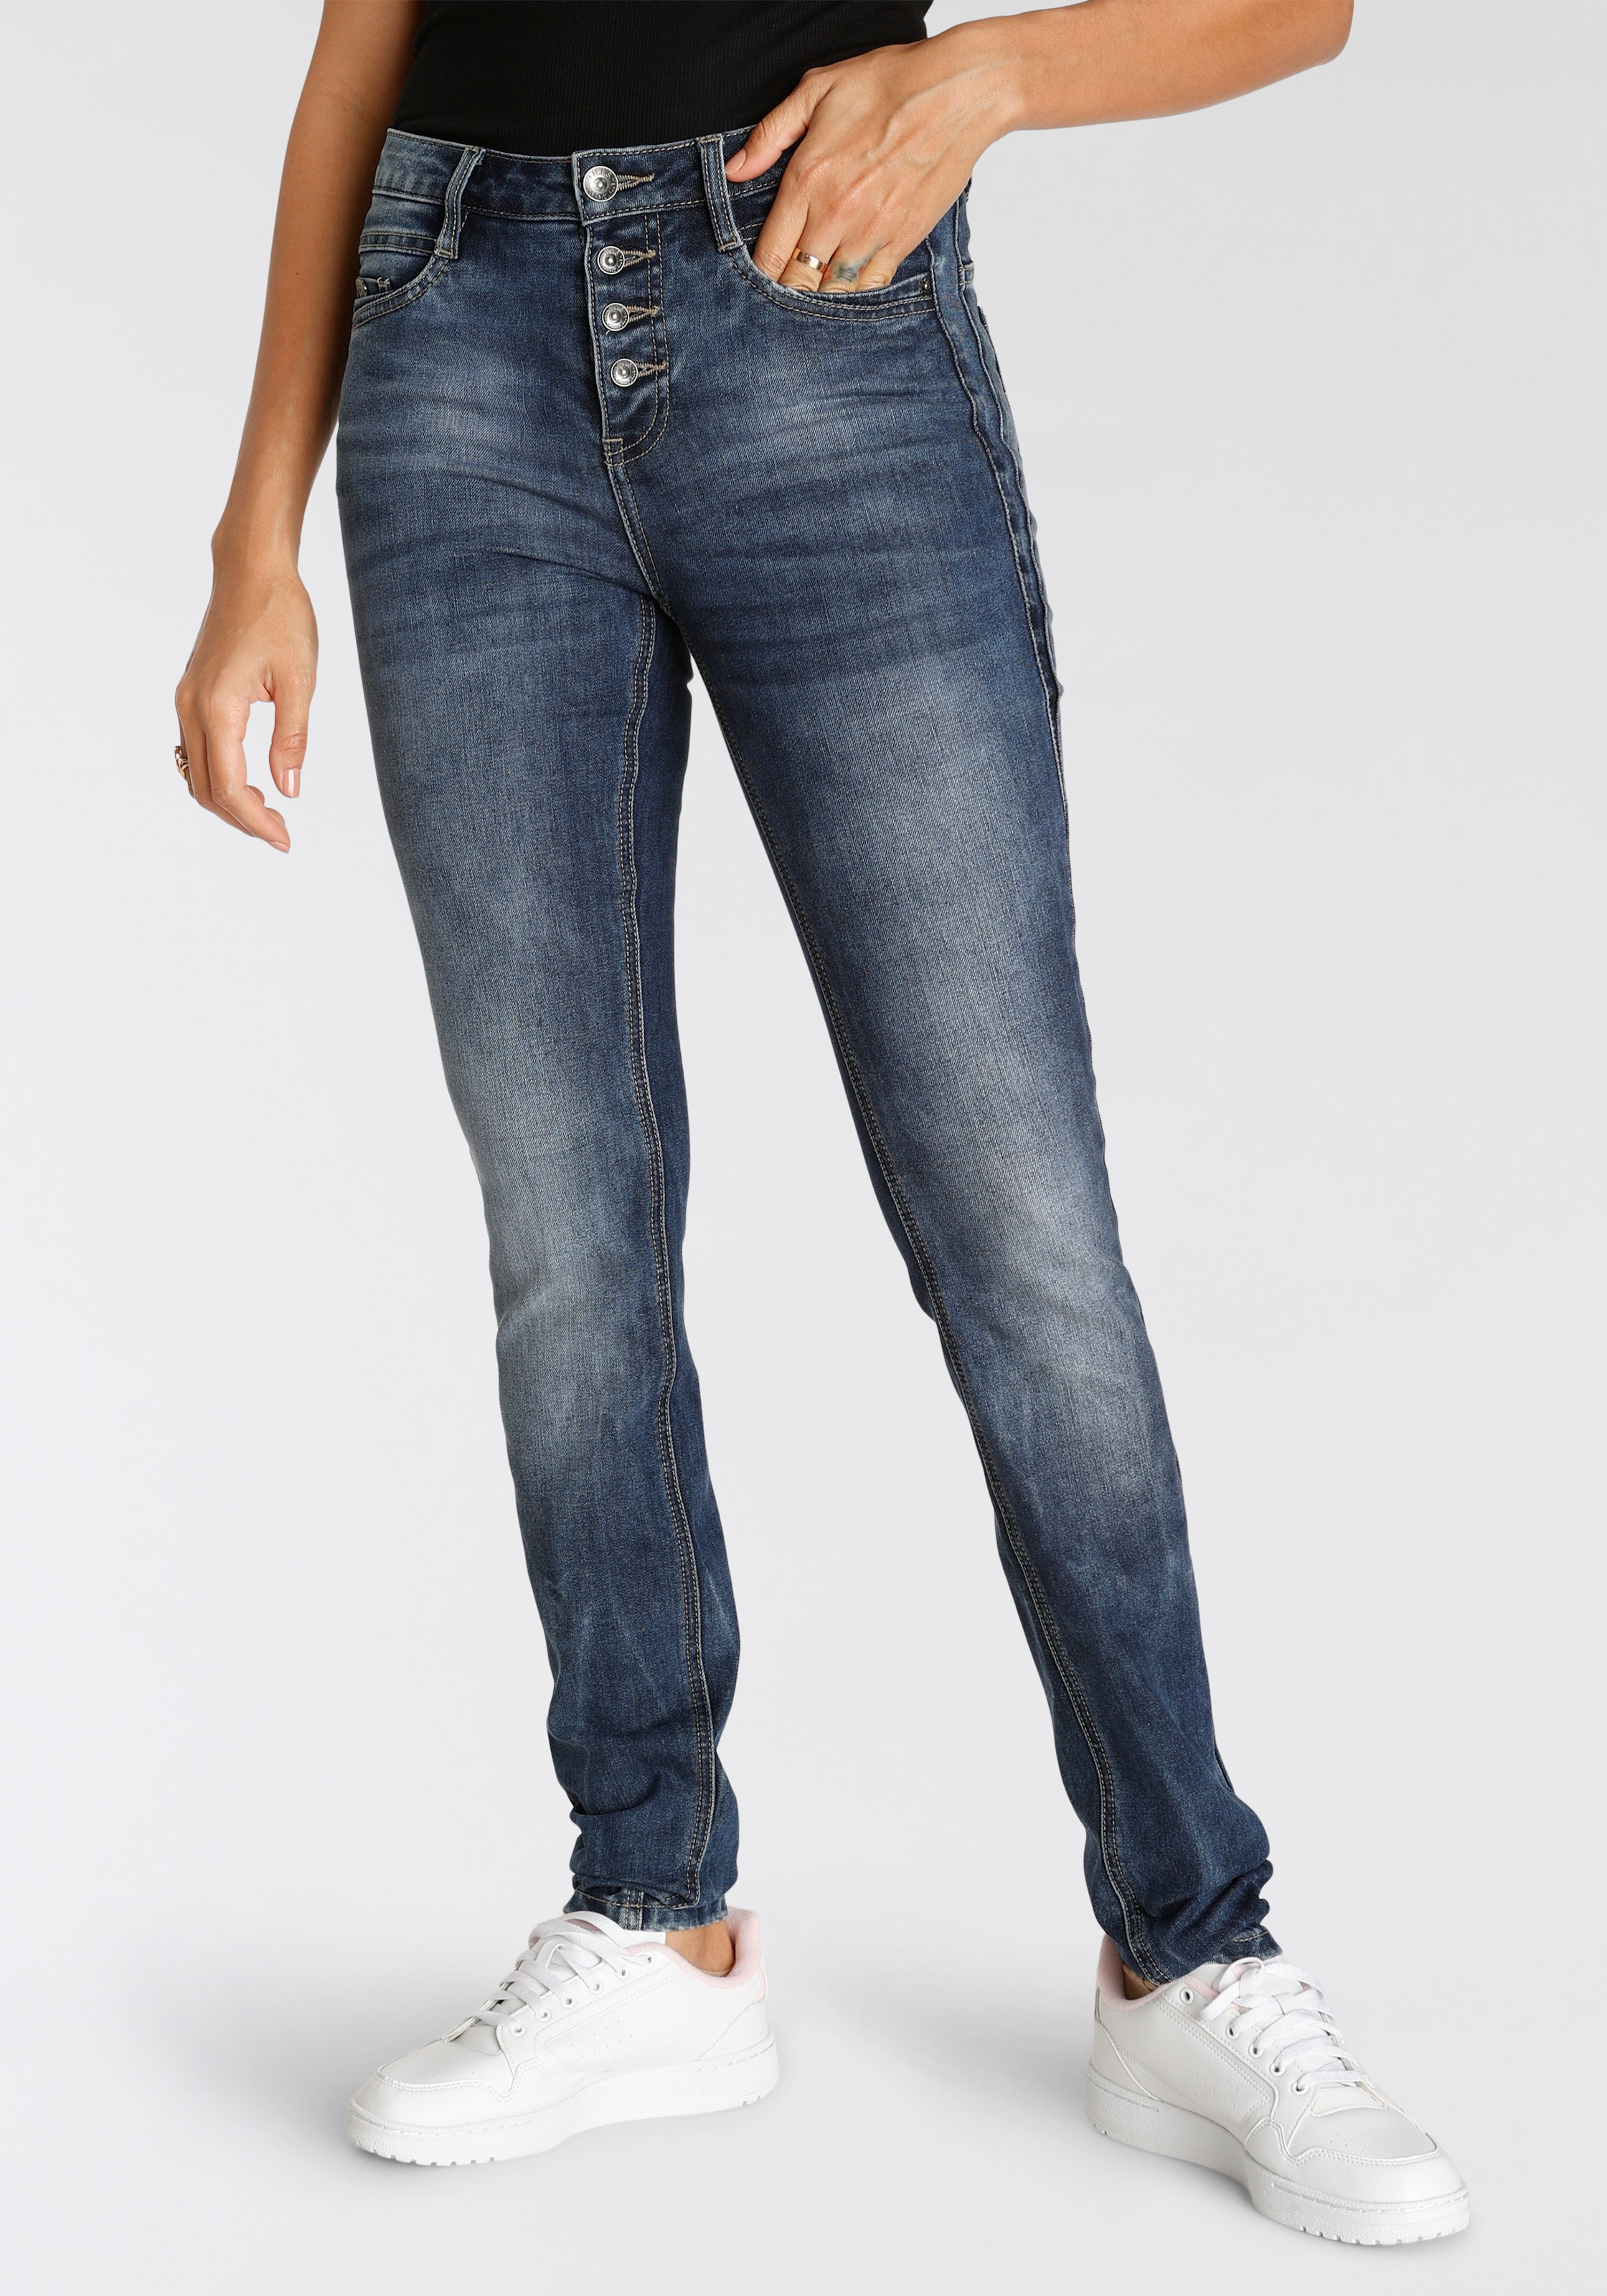 jetzt Damen online - aktuelle Modetrends His Jeans shoppen